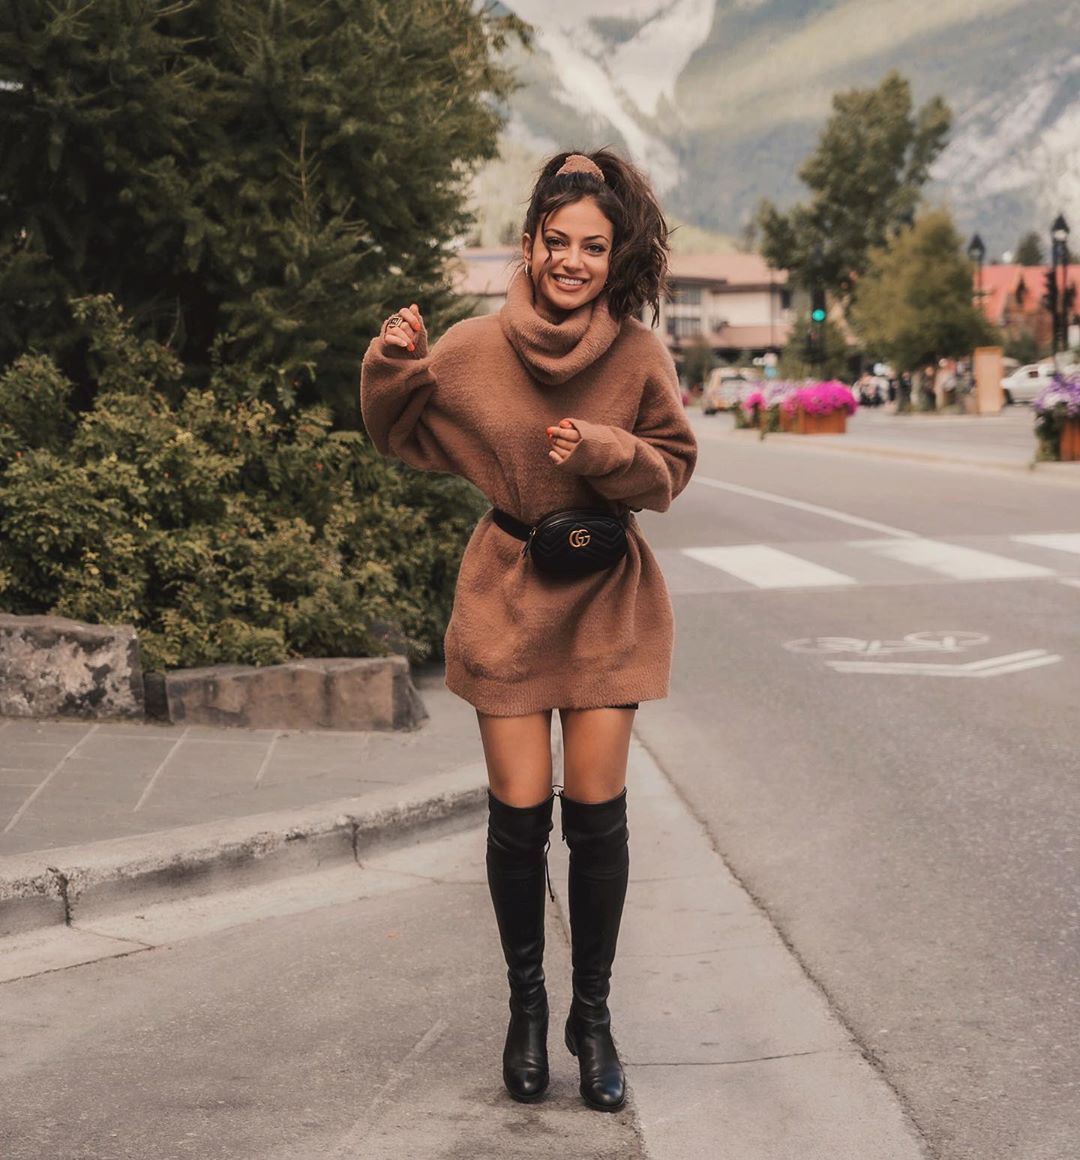 Inanna Sarkis 2020 : Inanna Sarkis (inanna) - Instagram-125. 